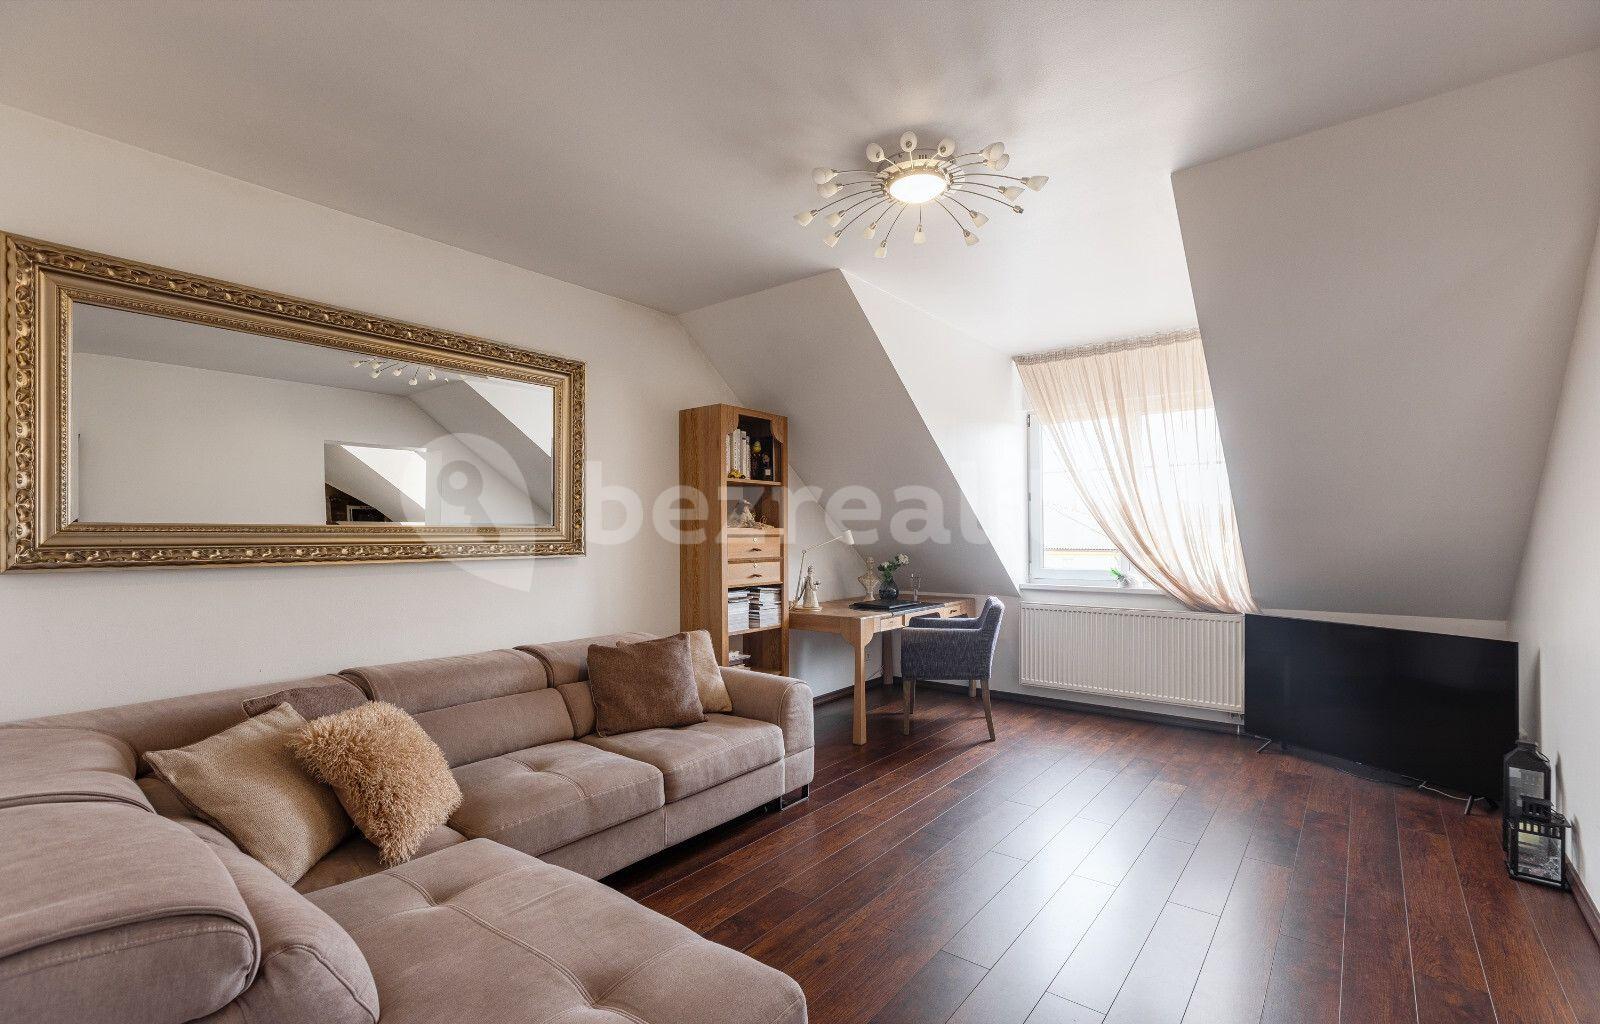 3 bedroom flat for sale, 85 m², Žlutá, Chrášťany, Středočeský Region